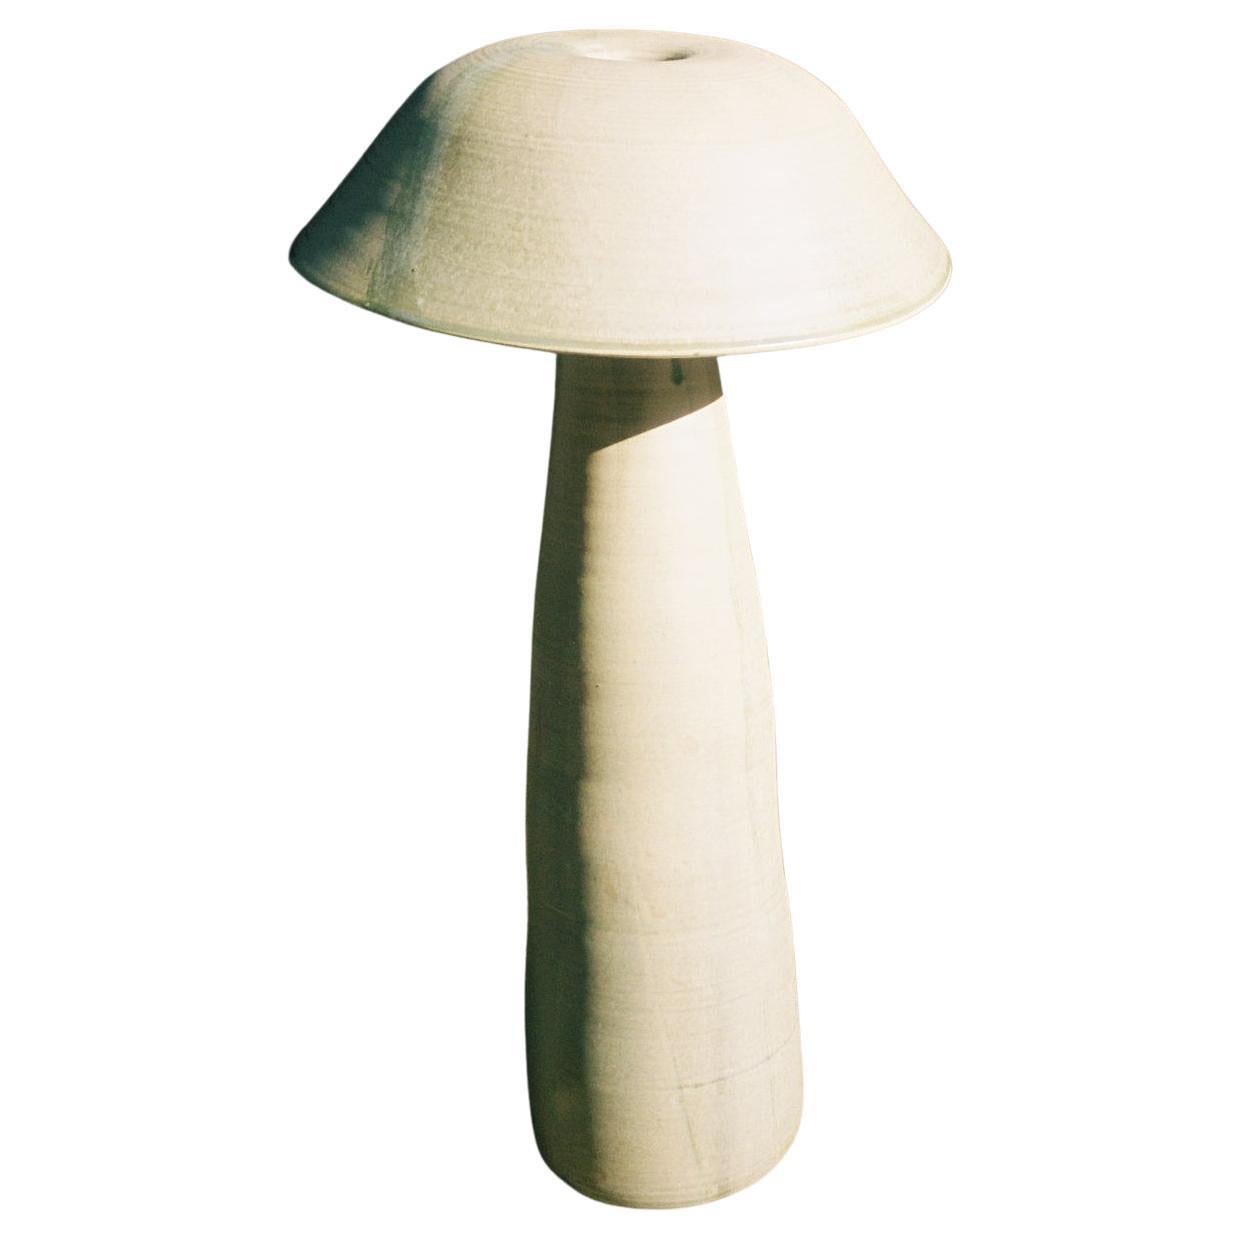 Knochen-Weiße rohe Pilzlampe von Nick Pourfard